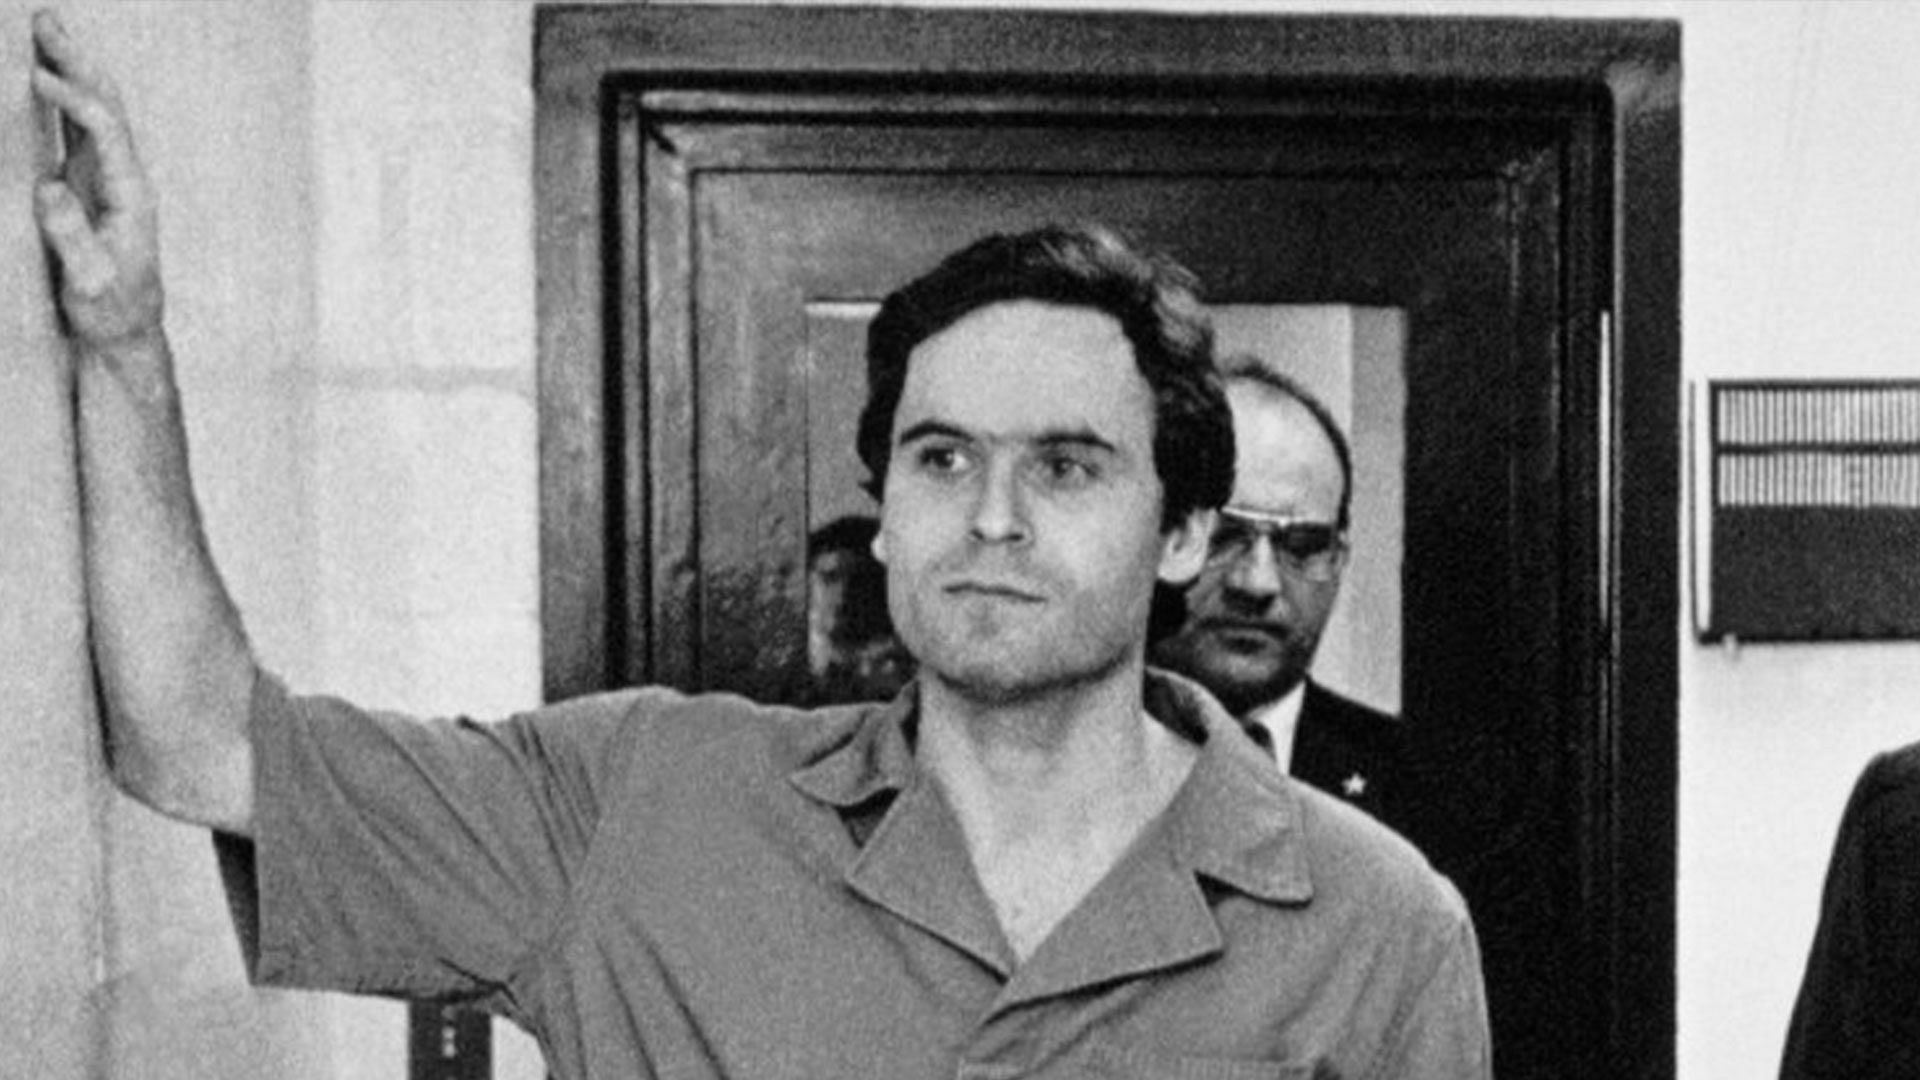 Ted Bundy after his capture in Salt Lake City (image via Vogue Images)